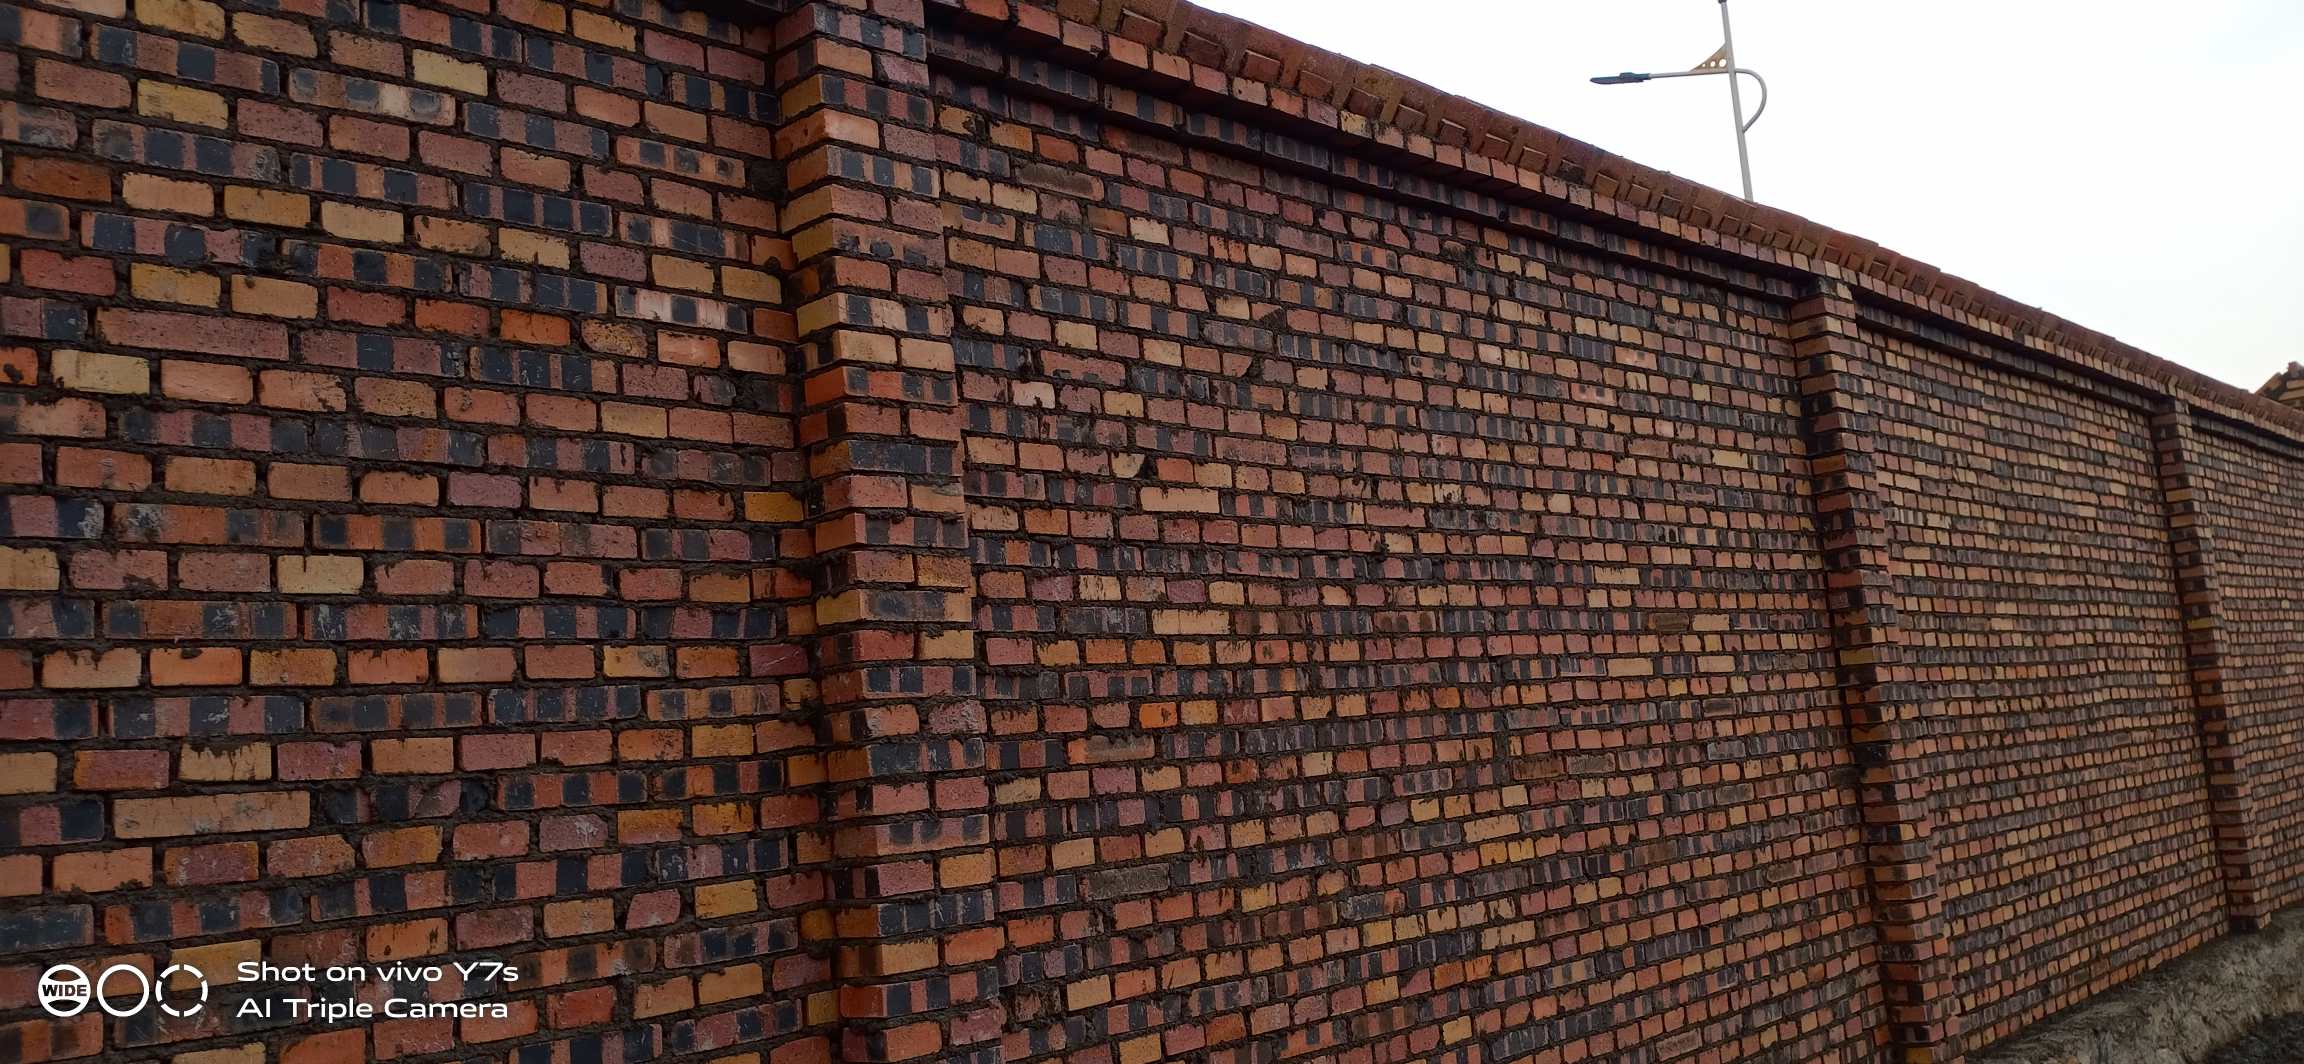 晋城泽州县山西晋城围墙小红砖200万块左右美丽有意的